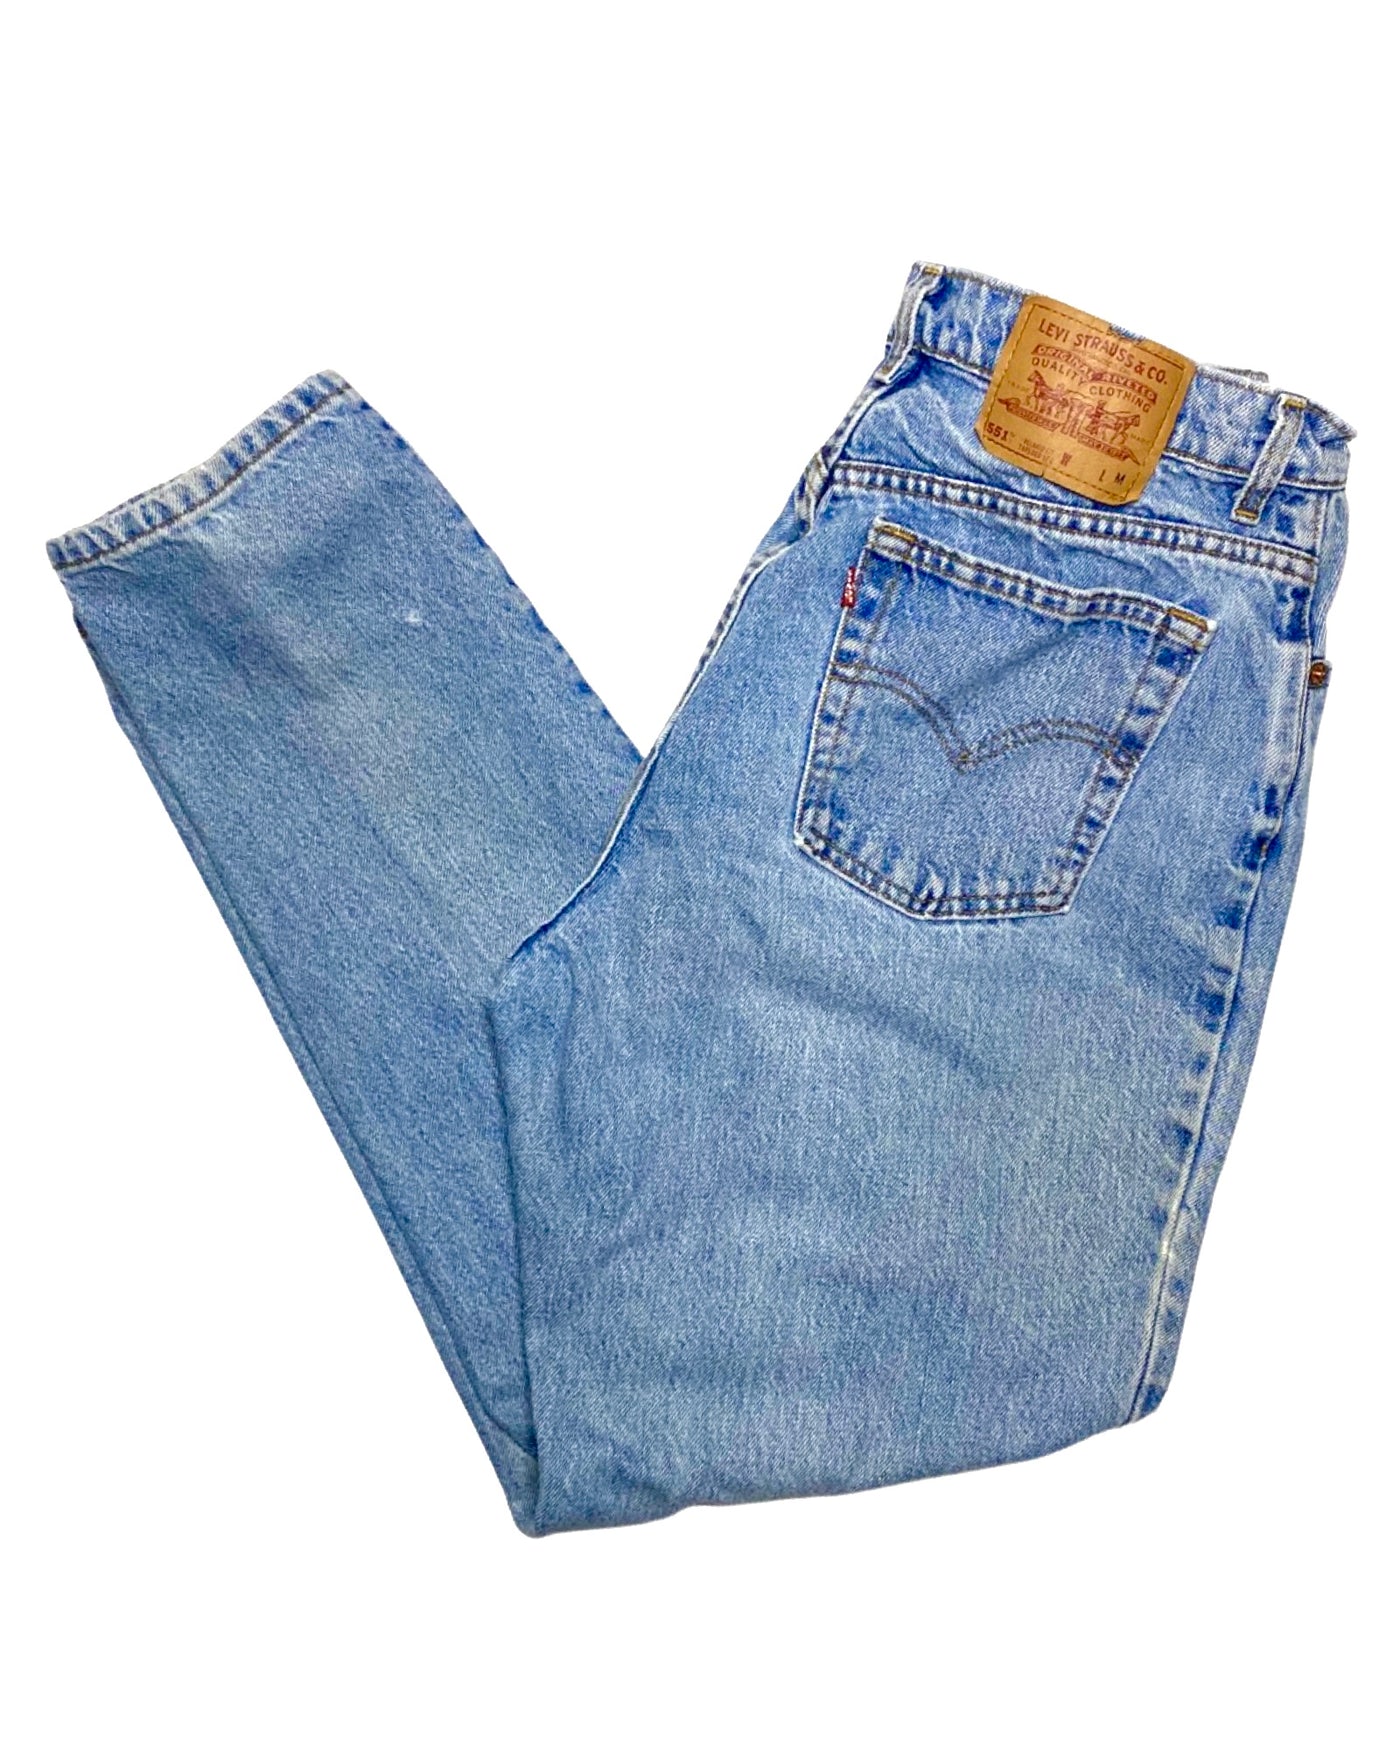 Vintage 90s Levi’s 551 Jeans